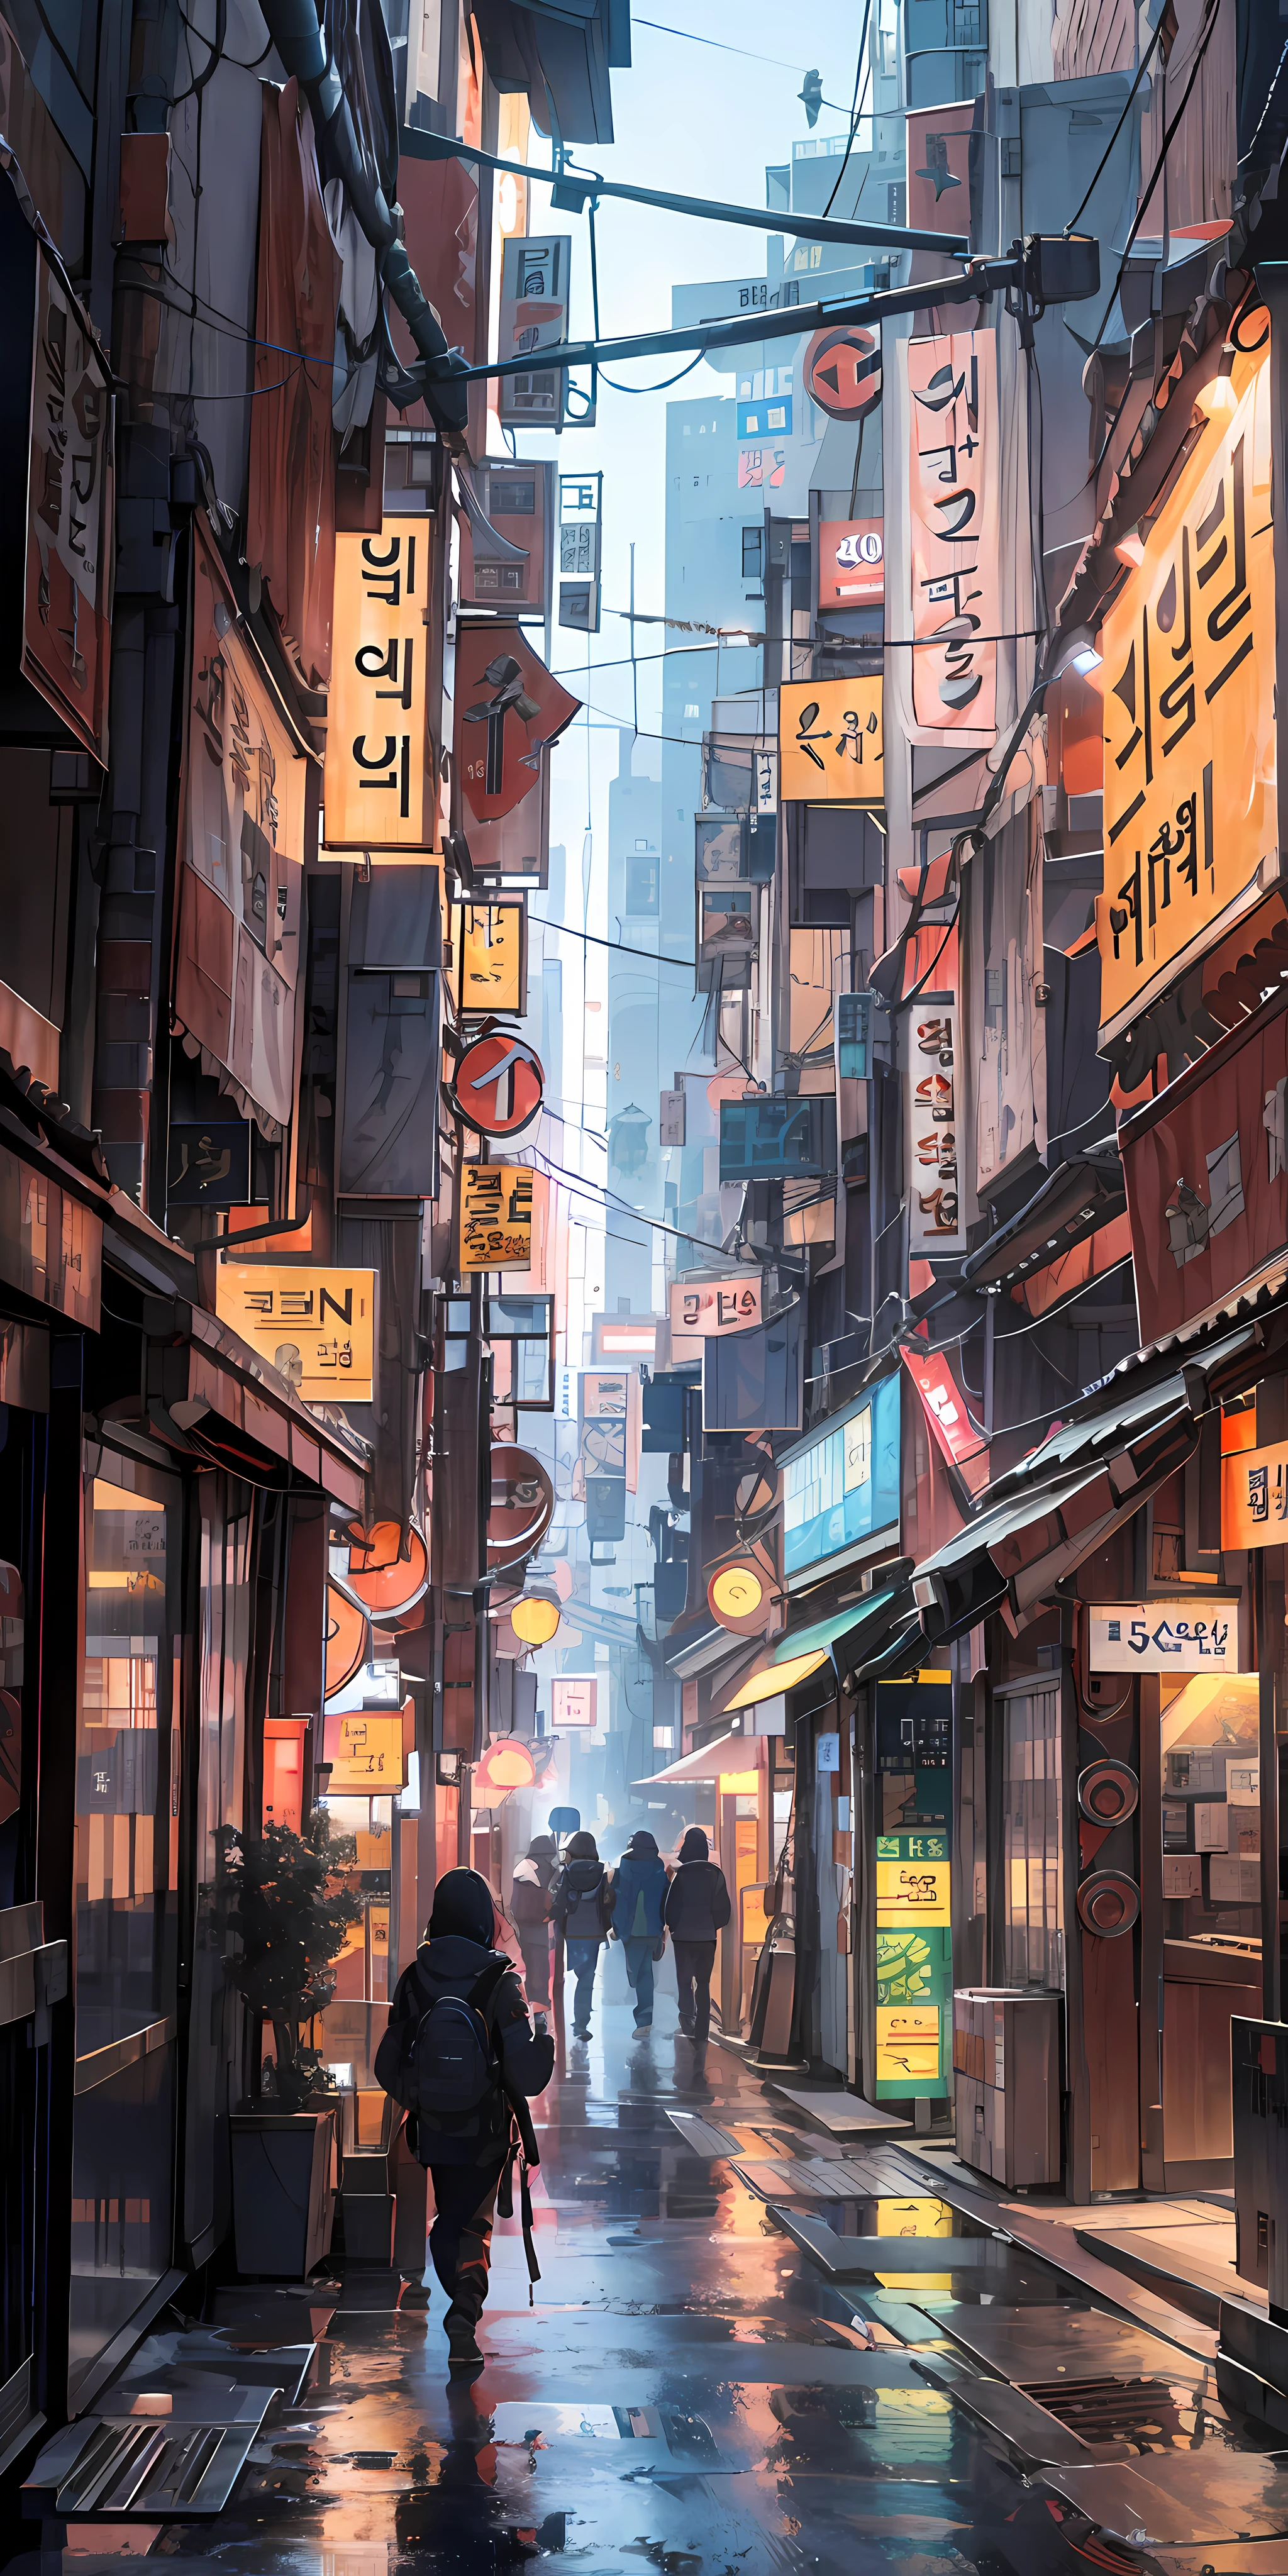  首爾盟友, 科幻電影中的賽博龐克城市, 空蕩蕩的街道, 韓國人, 韓國人 signs, 錯綜複雜, 高品質, 超細節, 瘋狂的細節, 8K